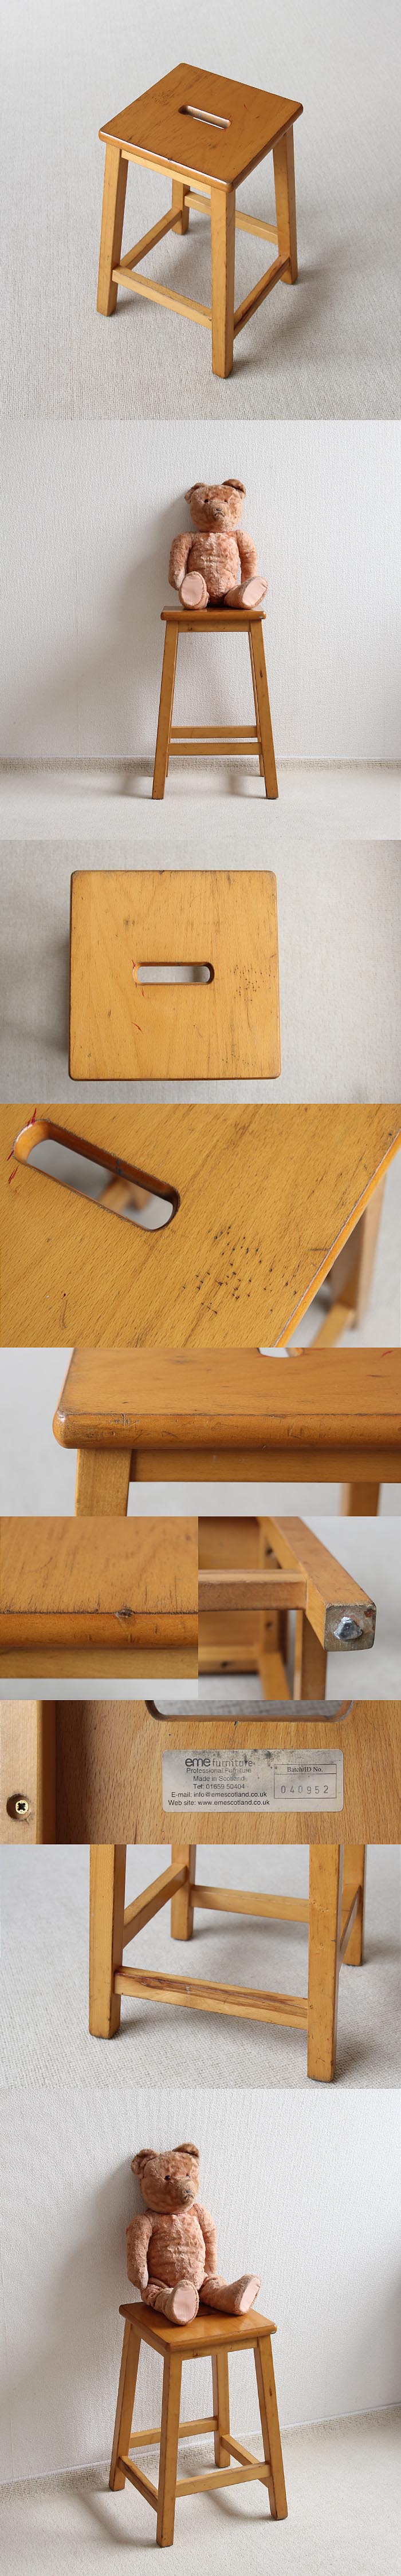 スコットランド ヴィンテージスタイル スクール スツール 木製 イギリス 学校椅子 家具「eme furniture」P-377